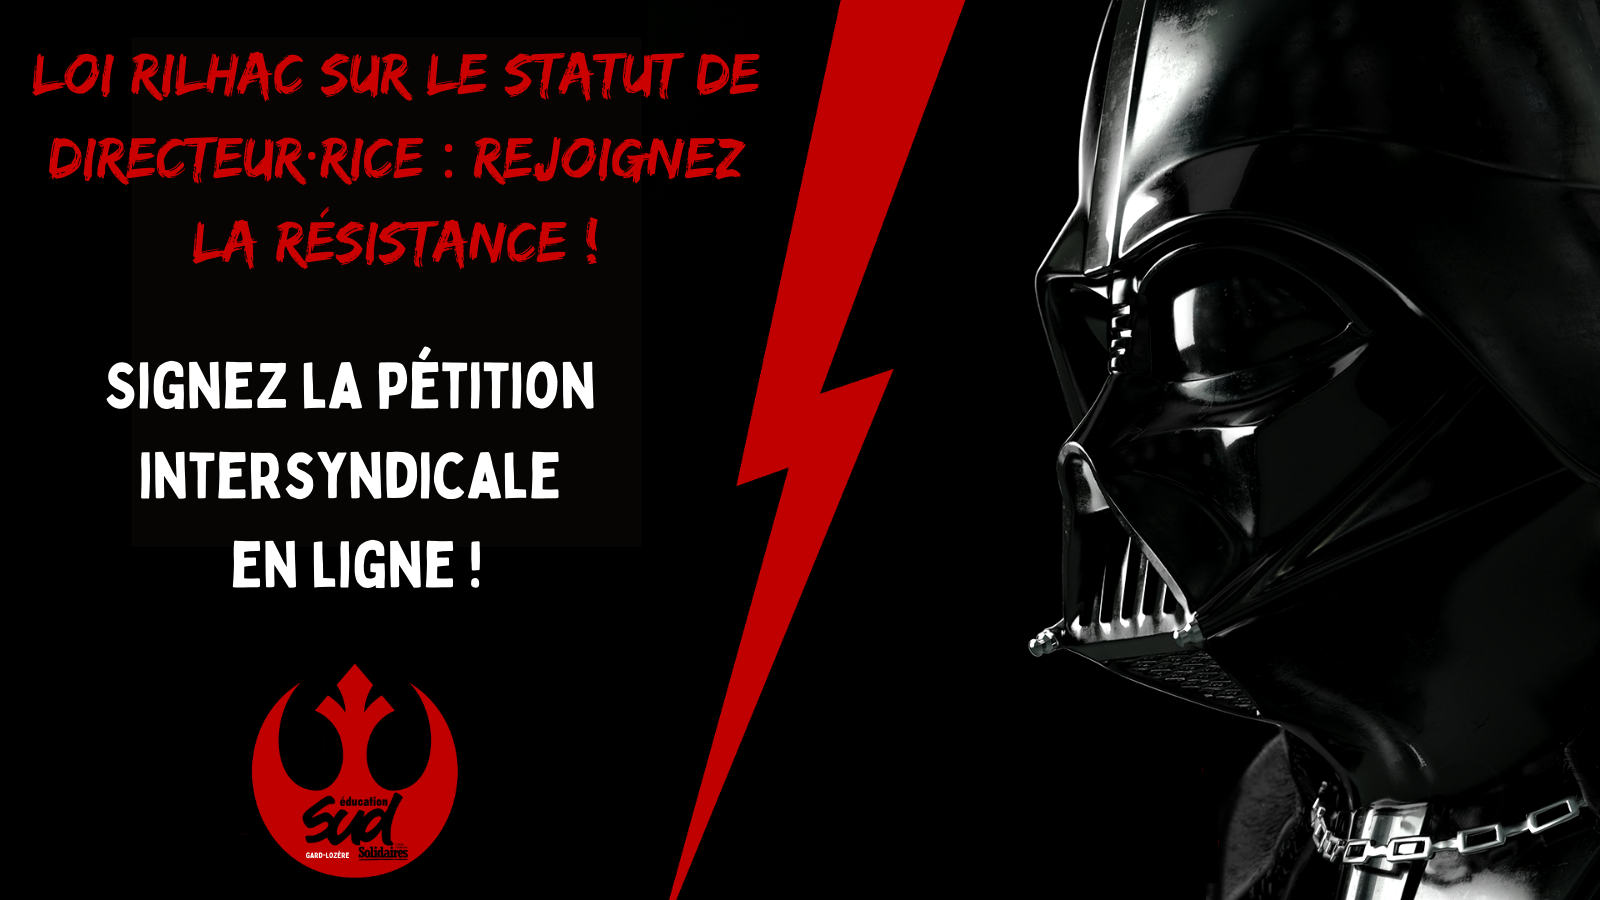 STOP à la loi Rilhac ! Directeur·rice·s, signez la pétition intersyndicale !